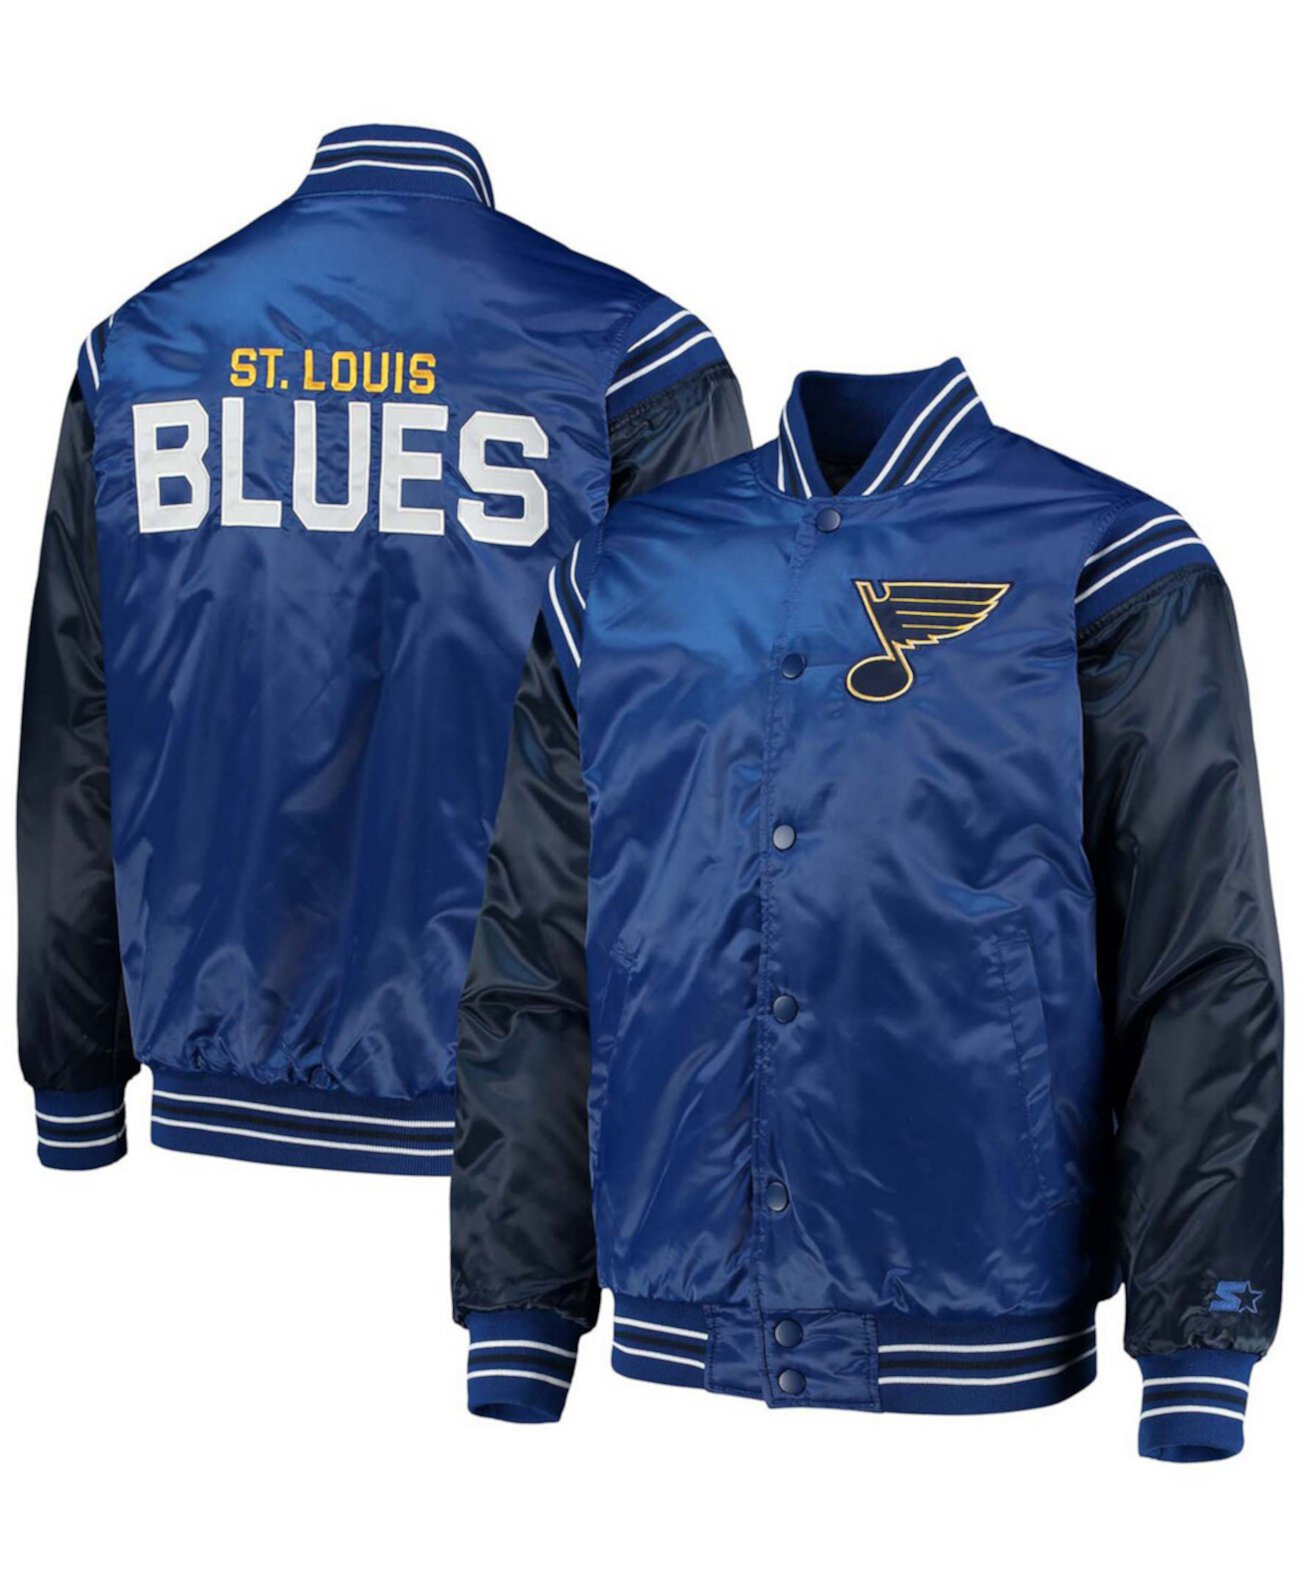 Мужская синяя, темно-синяя куртка St. Louis Blues Enforcer Satin Varsity с полной застежкой Starter